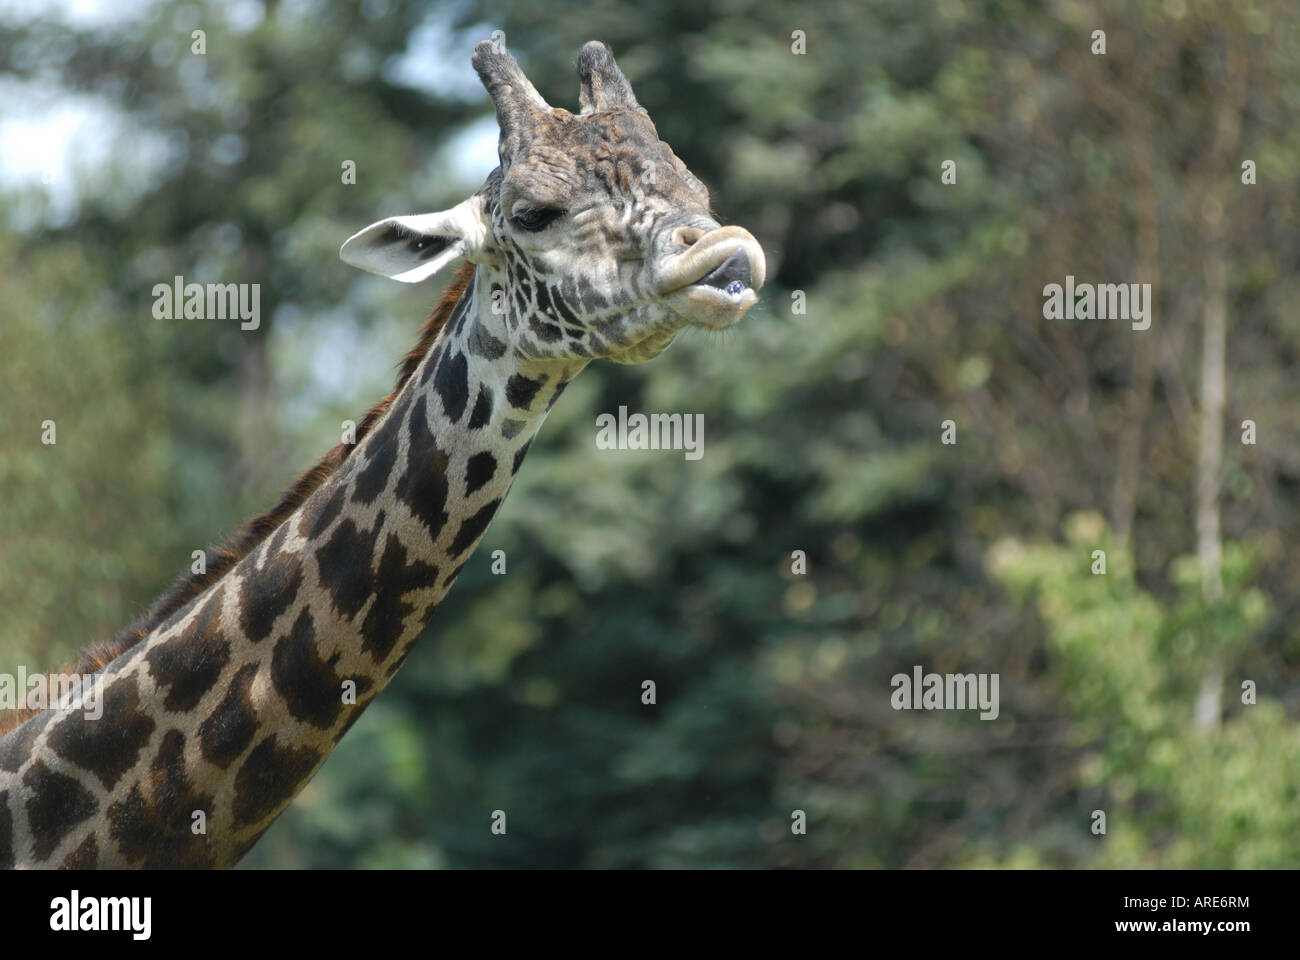 Libre de droit d'une Girafe (Giraffa camelopardalis), Franklin Park Zoo Boston Massachusetts (MA) Etats-Unis d'Amérique (USA) Banque D'Images